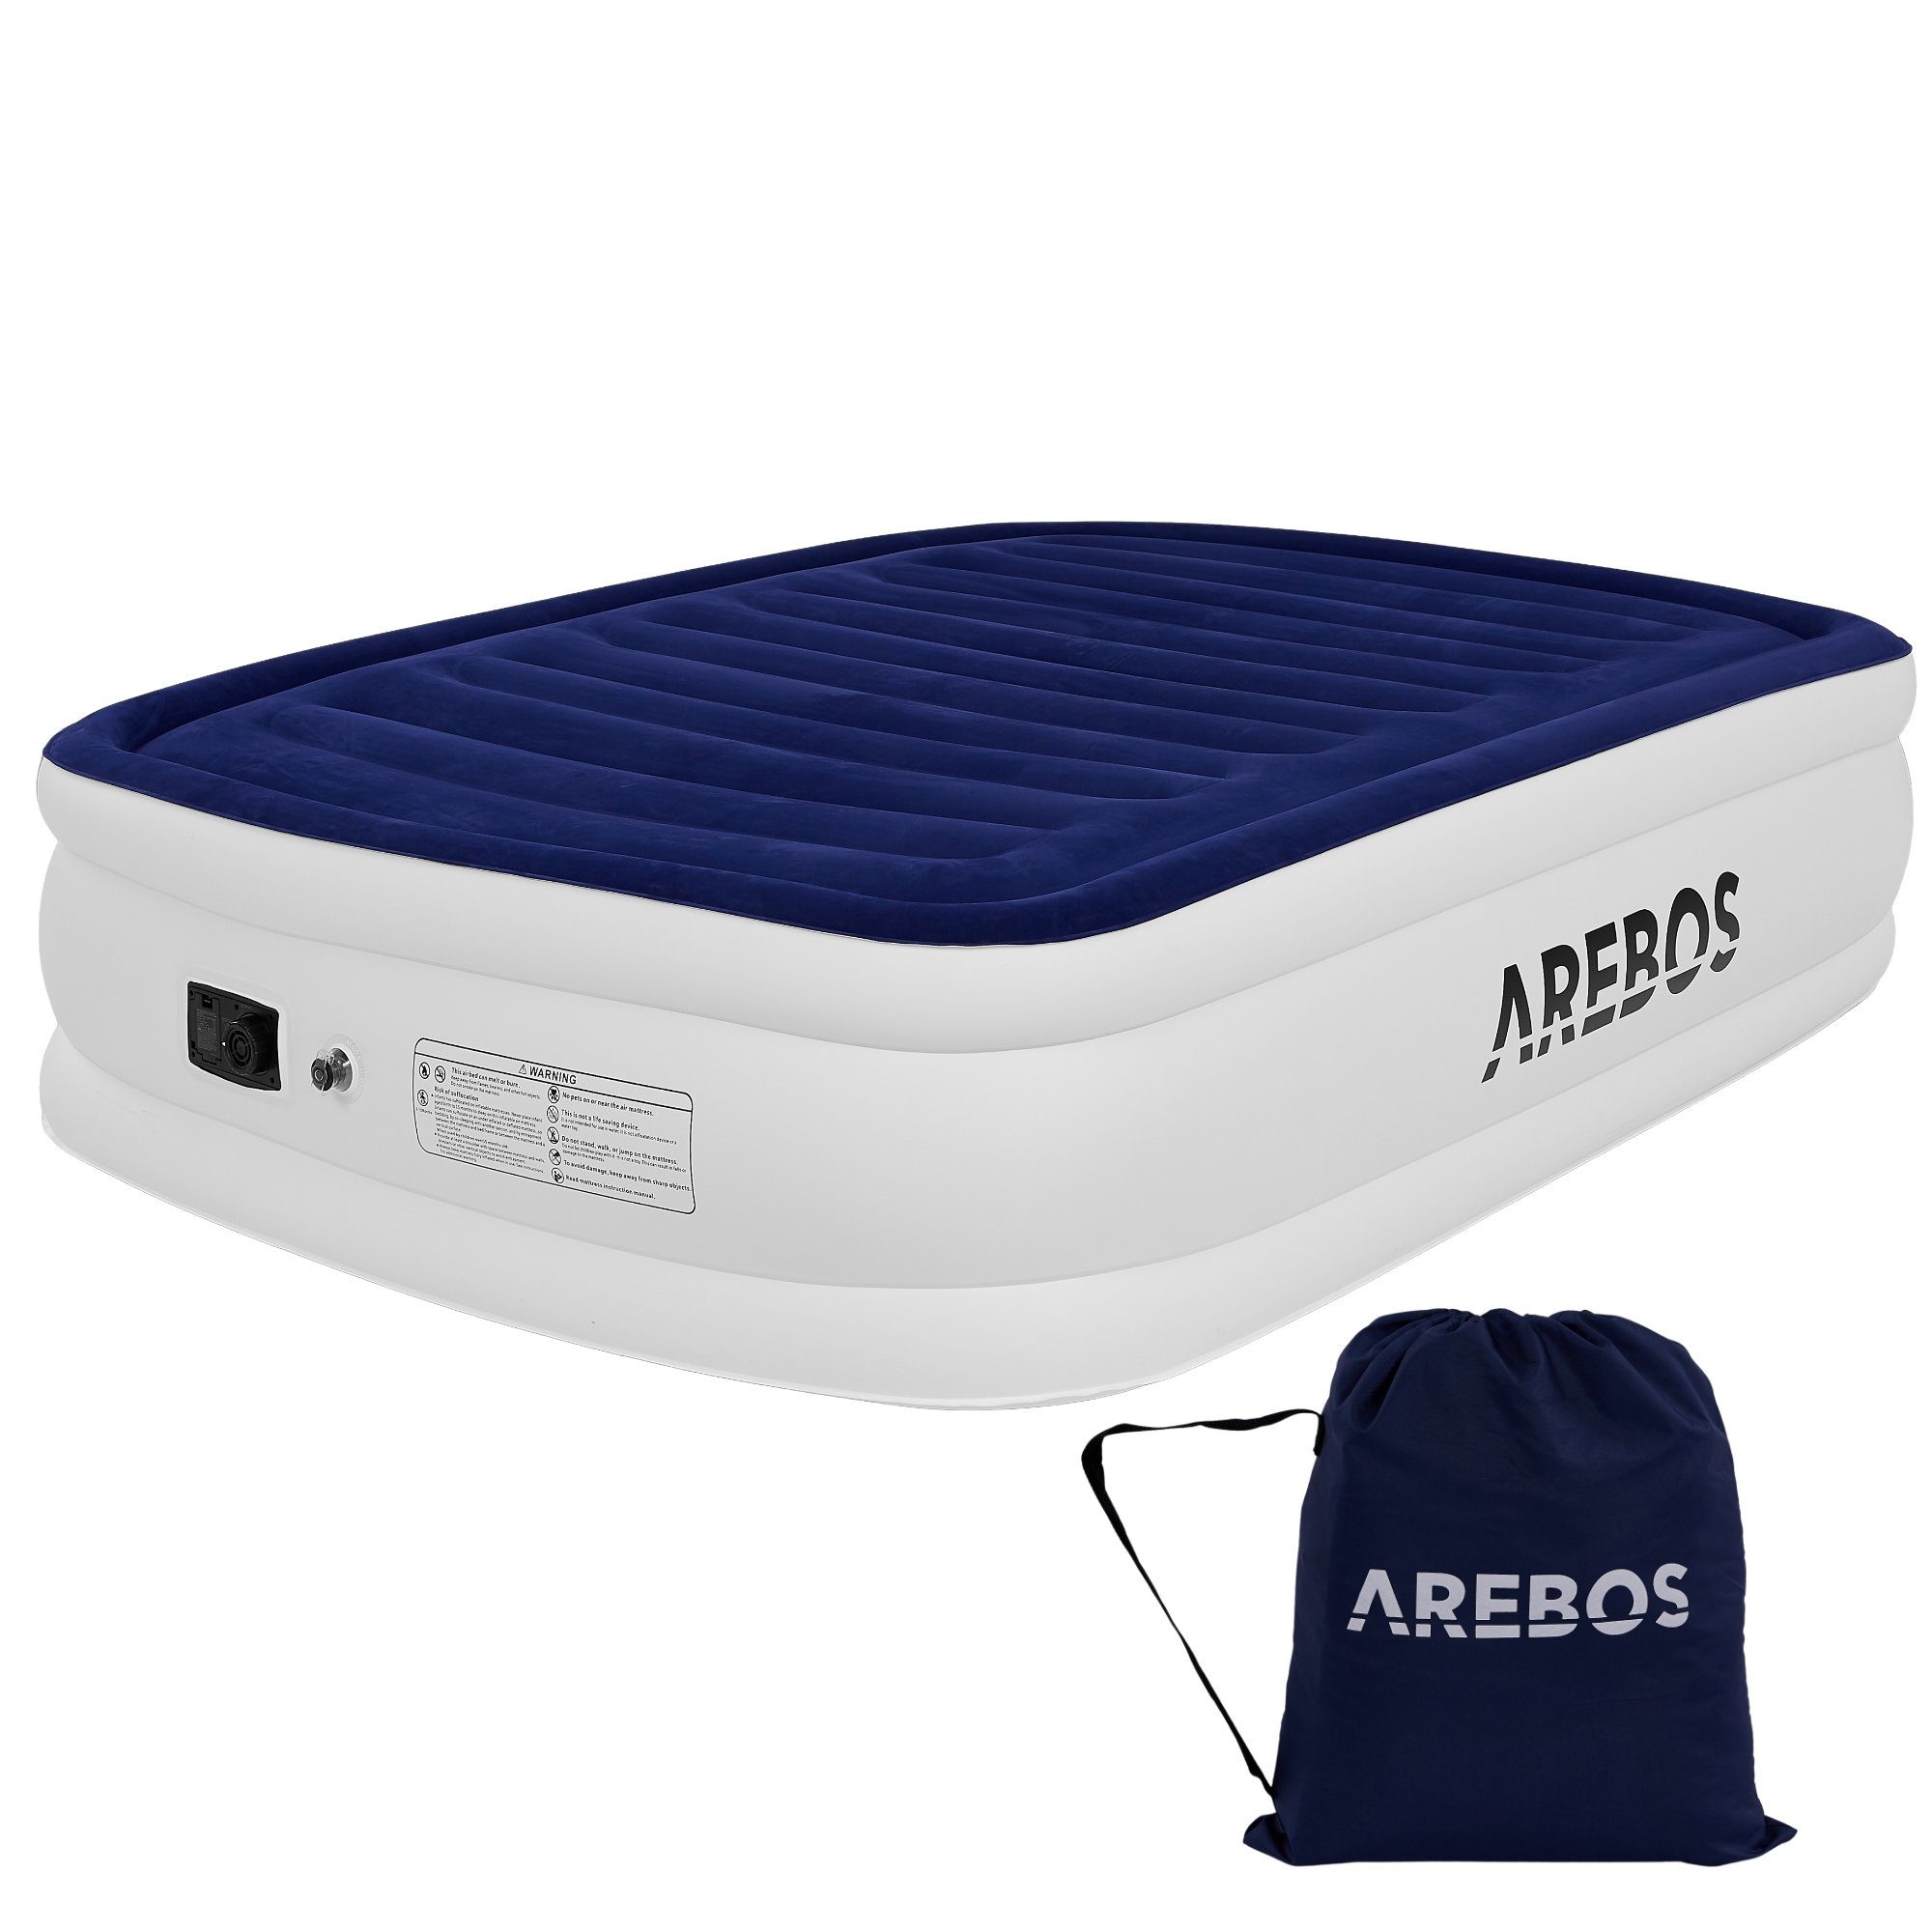 Arebos Luftbett Luftmatratze Aufblasbare Matratze Selbstaufblasend mit Pumpe, Pumpe 2in1 Funktion: Inflation & Deflation